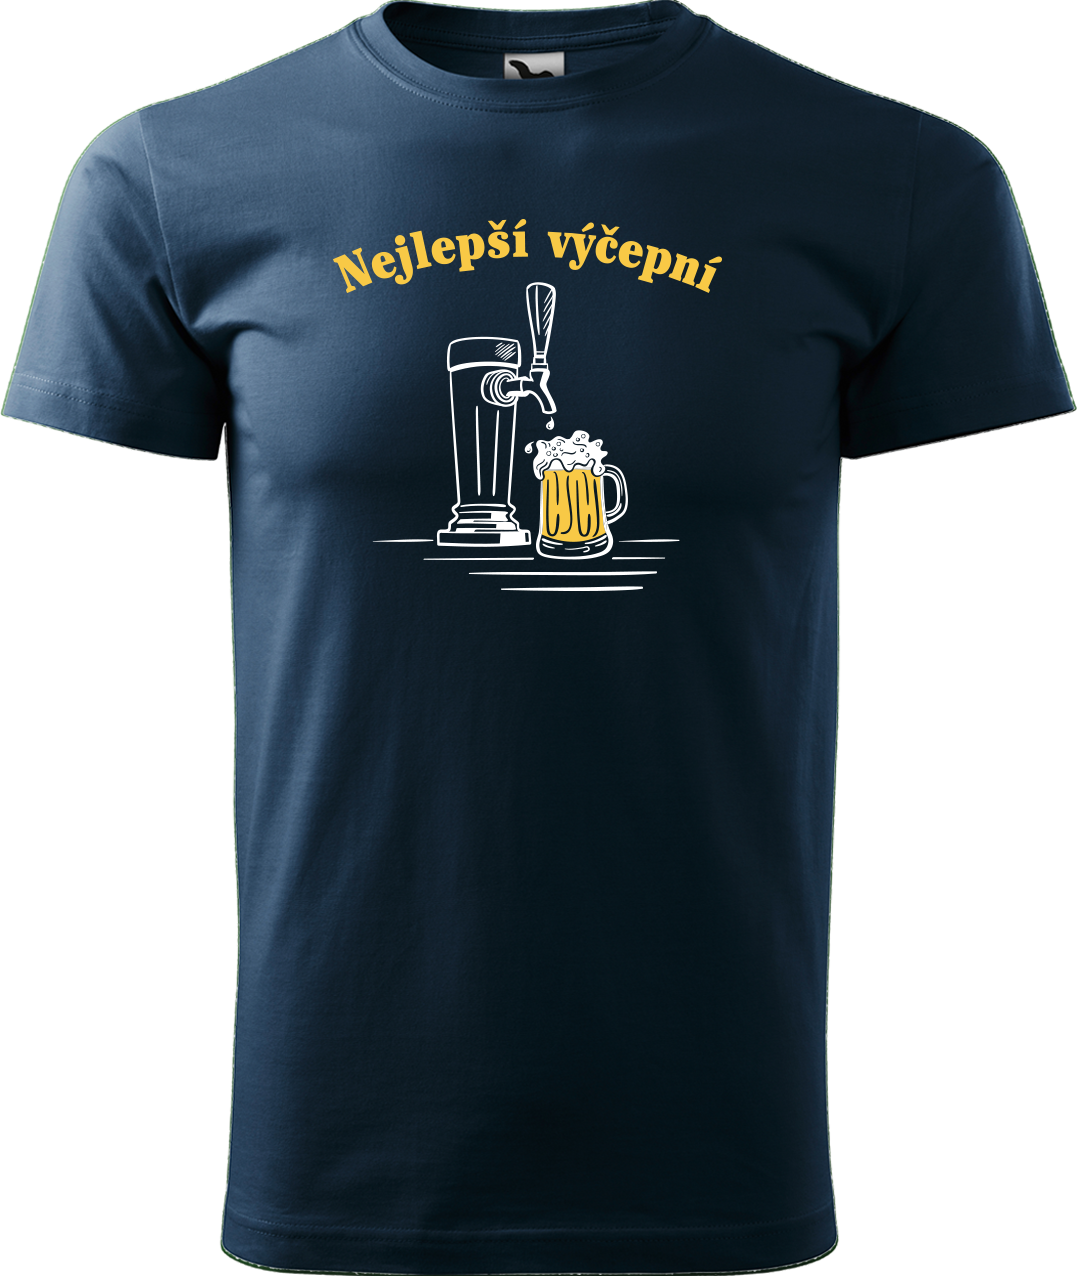 Pivní tričko - Nejlepší výčepní Velikost: S, Barva: Námořní modrá (02)